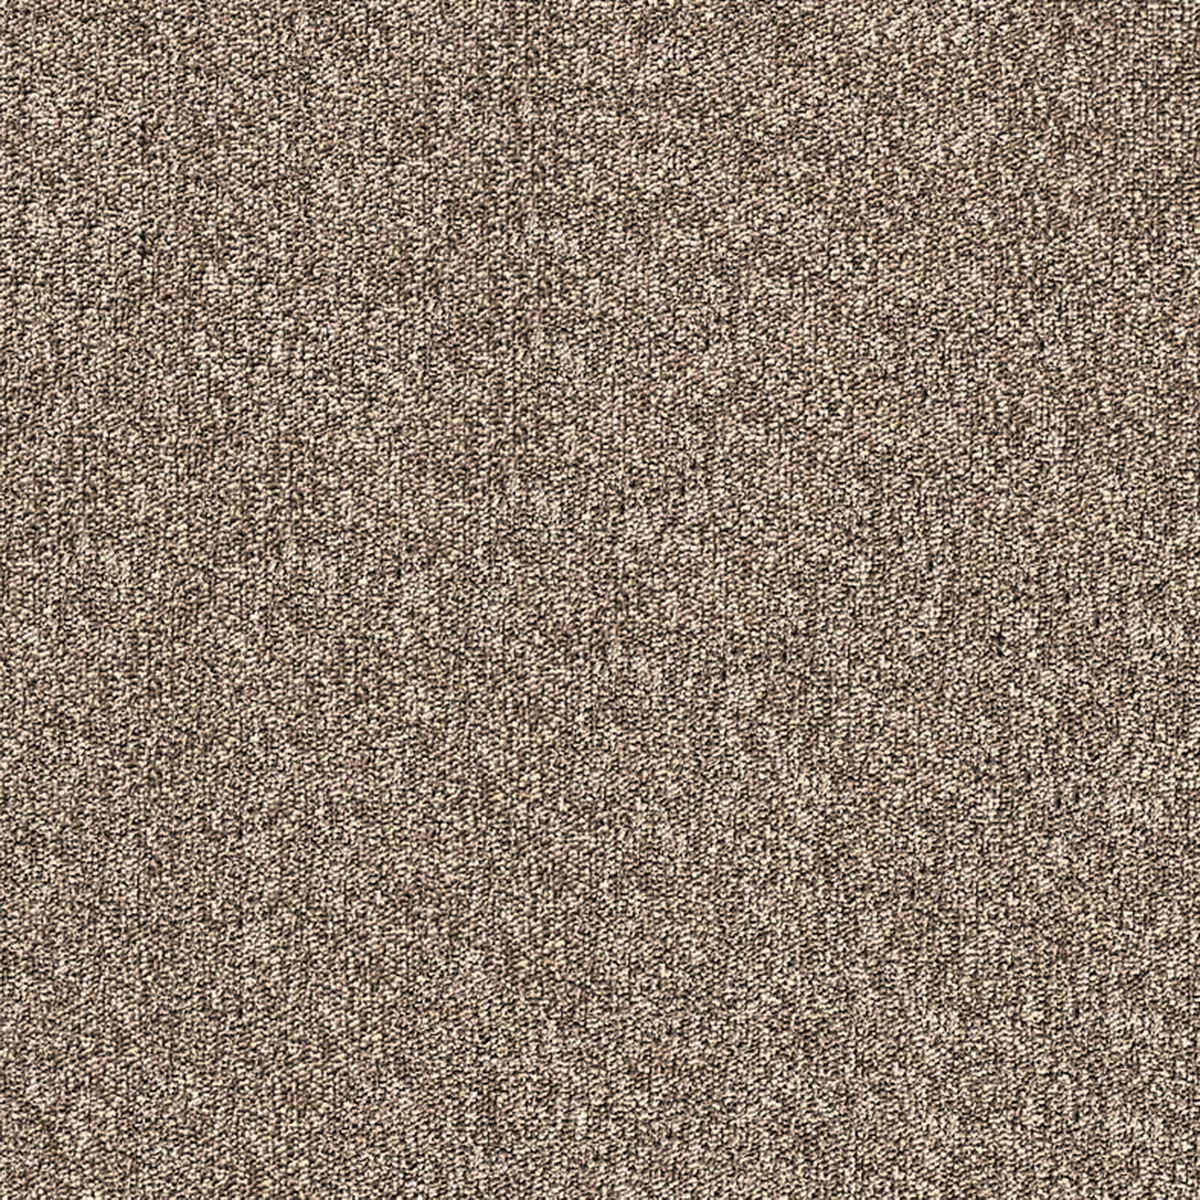 办公地毯ID9845